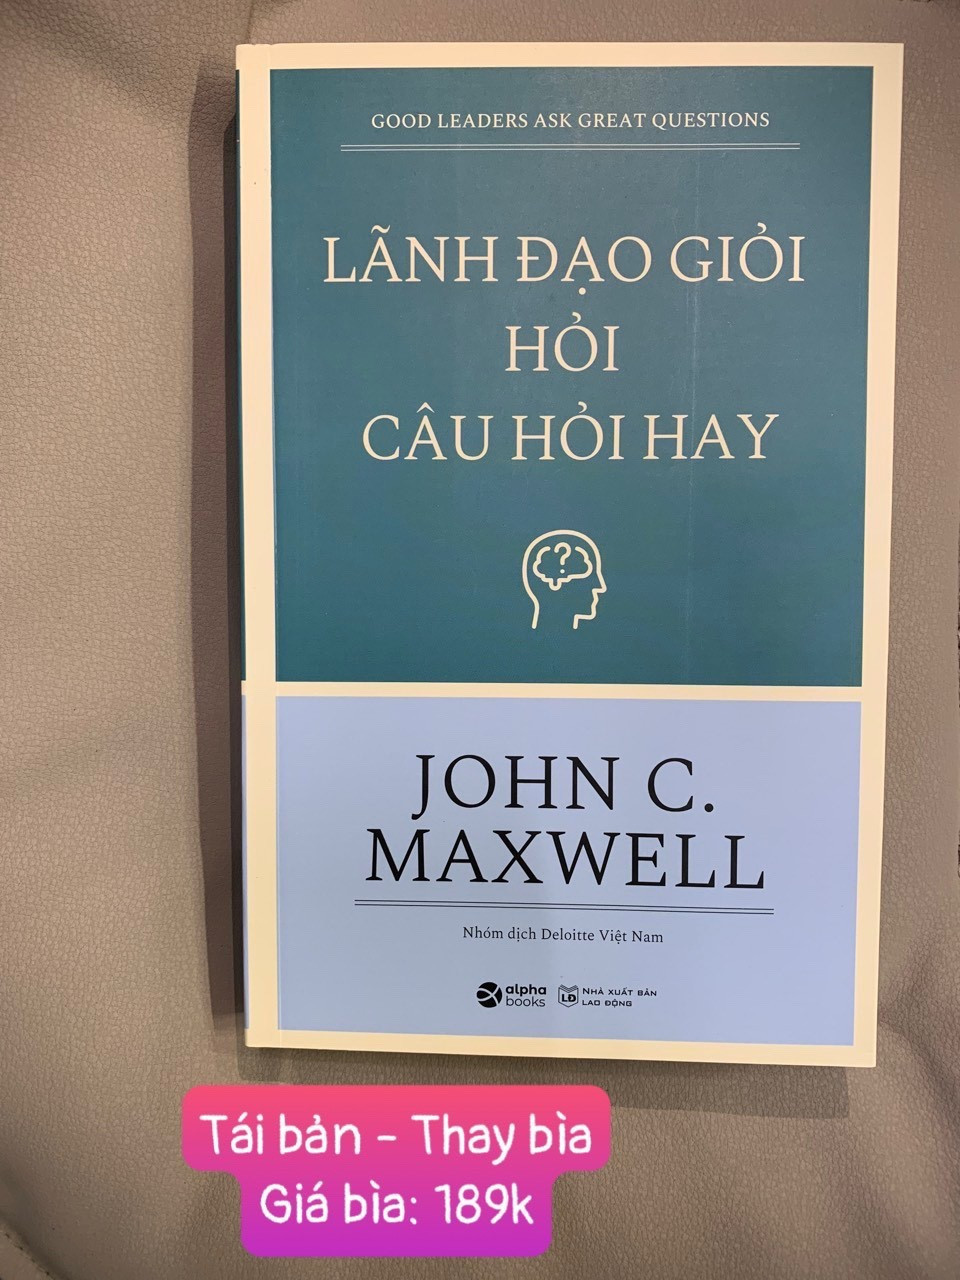 Lãnh Đạo Giỏi Hỏi Câu Hỏi Hay - John C. Maxwell - Nhóm dịch Deloitte Việt Nam - Tái bản 2023 - (bìa mềm)